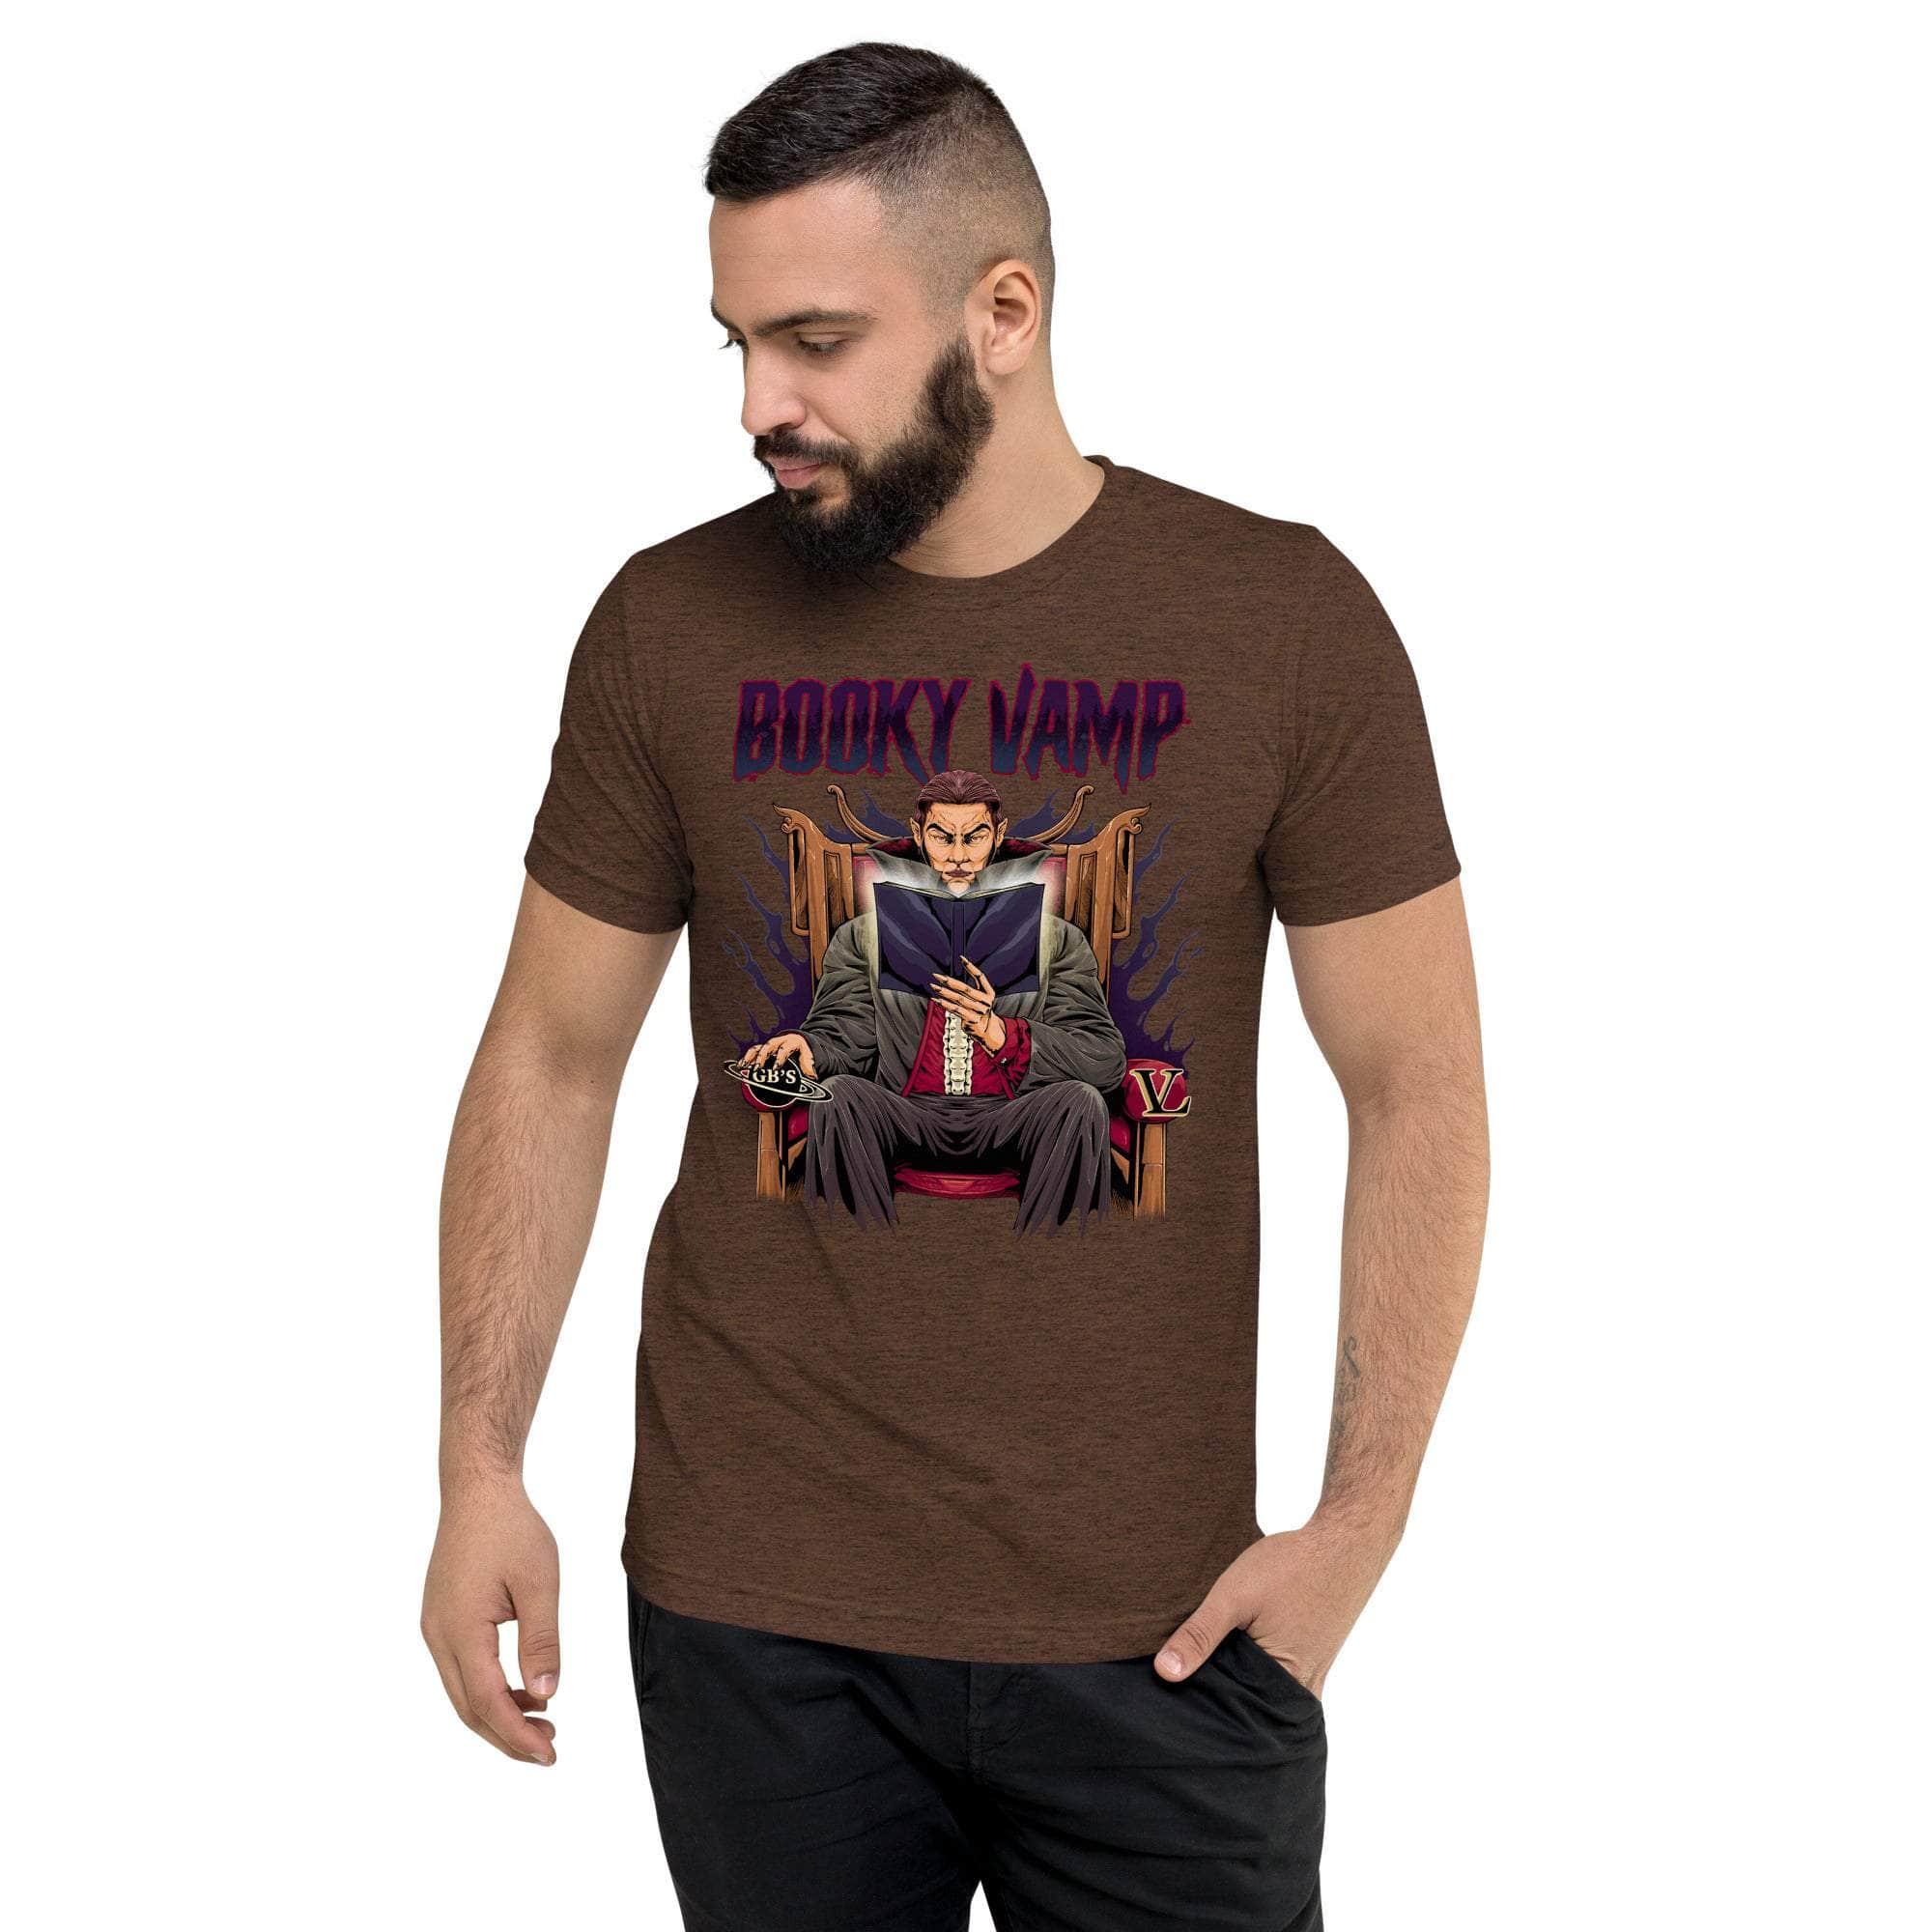 GBNY Brown Triblend / XS Vamp Life X GBNY "Booky Vamp" T-shirt - Men's 2381652_6496